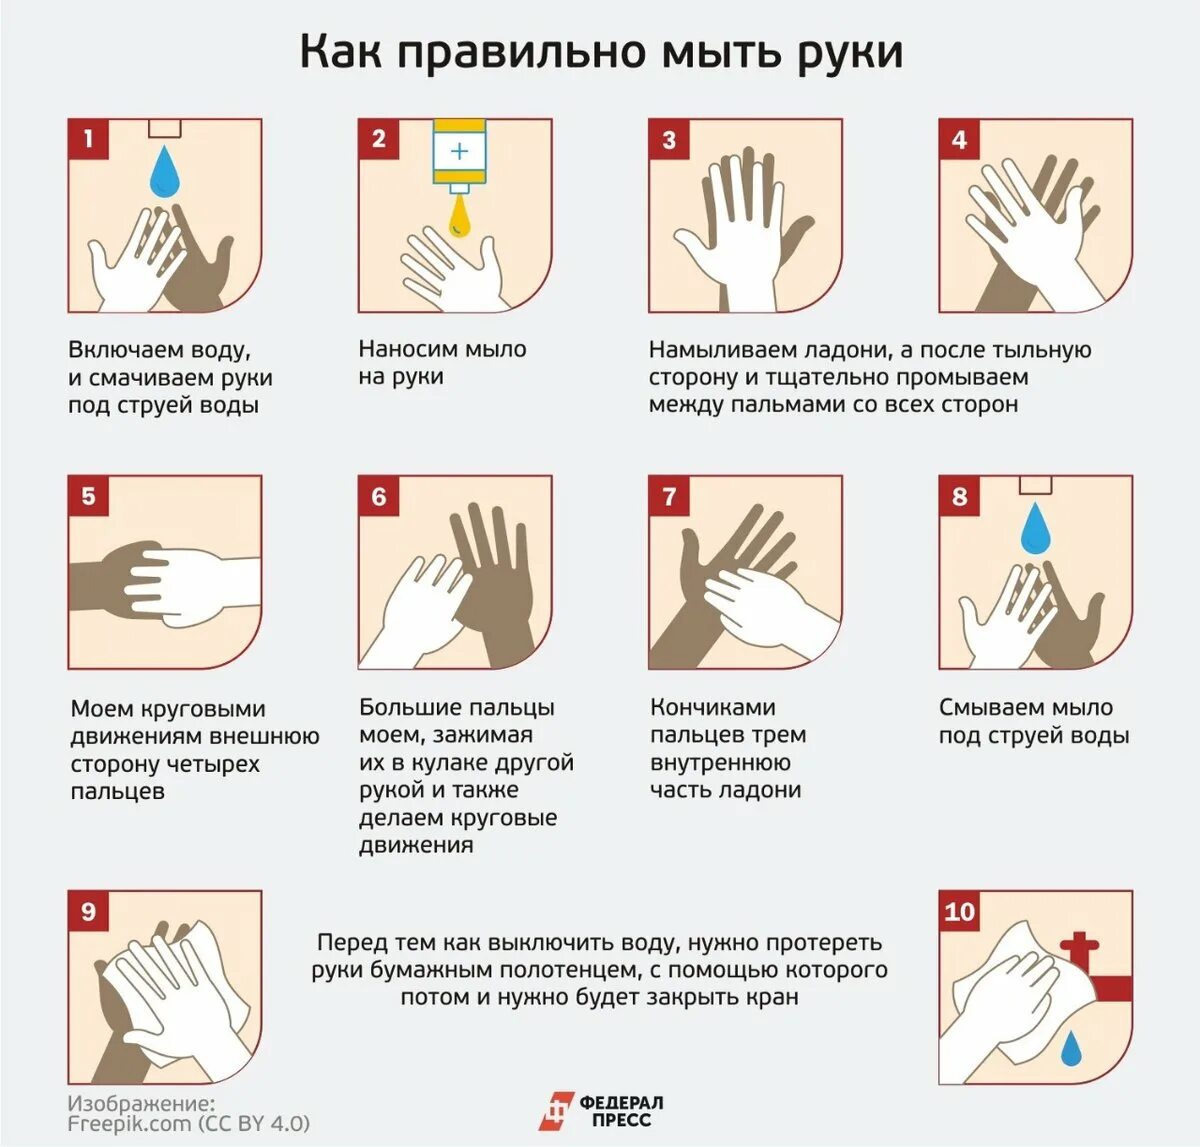 Во время мытья рук необходимо гигтест. Как правильно мыть руки. КККМ правильн омыть руки. Памятка Моем руки правильно. КПК правилльнл мыть руки.